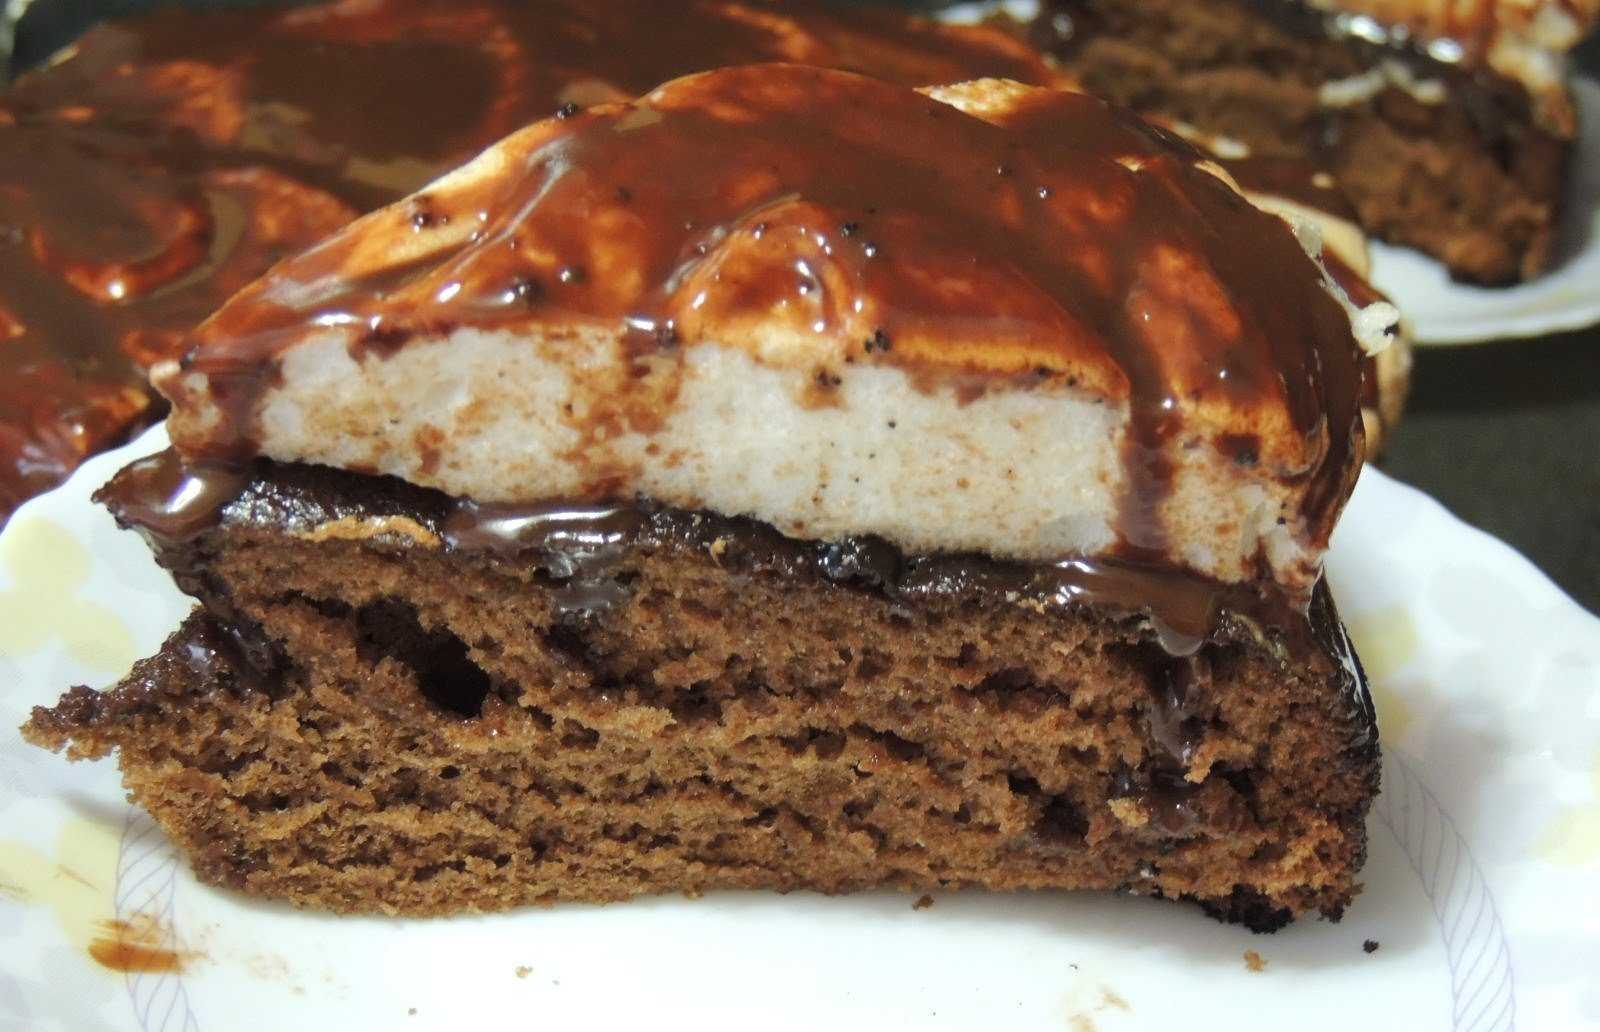 Шоколадный пирог с творогом «улыбка негра» — кулинарные рецепты любящей жены